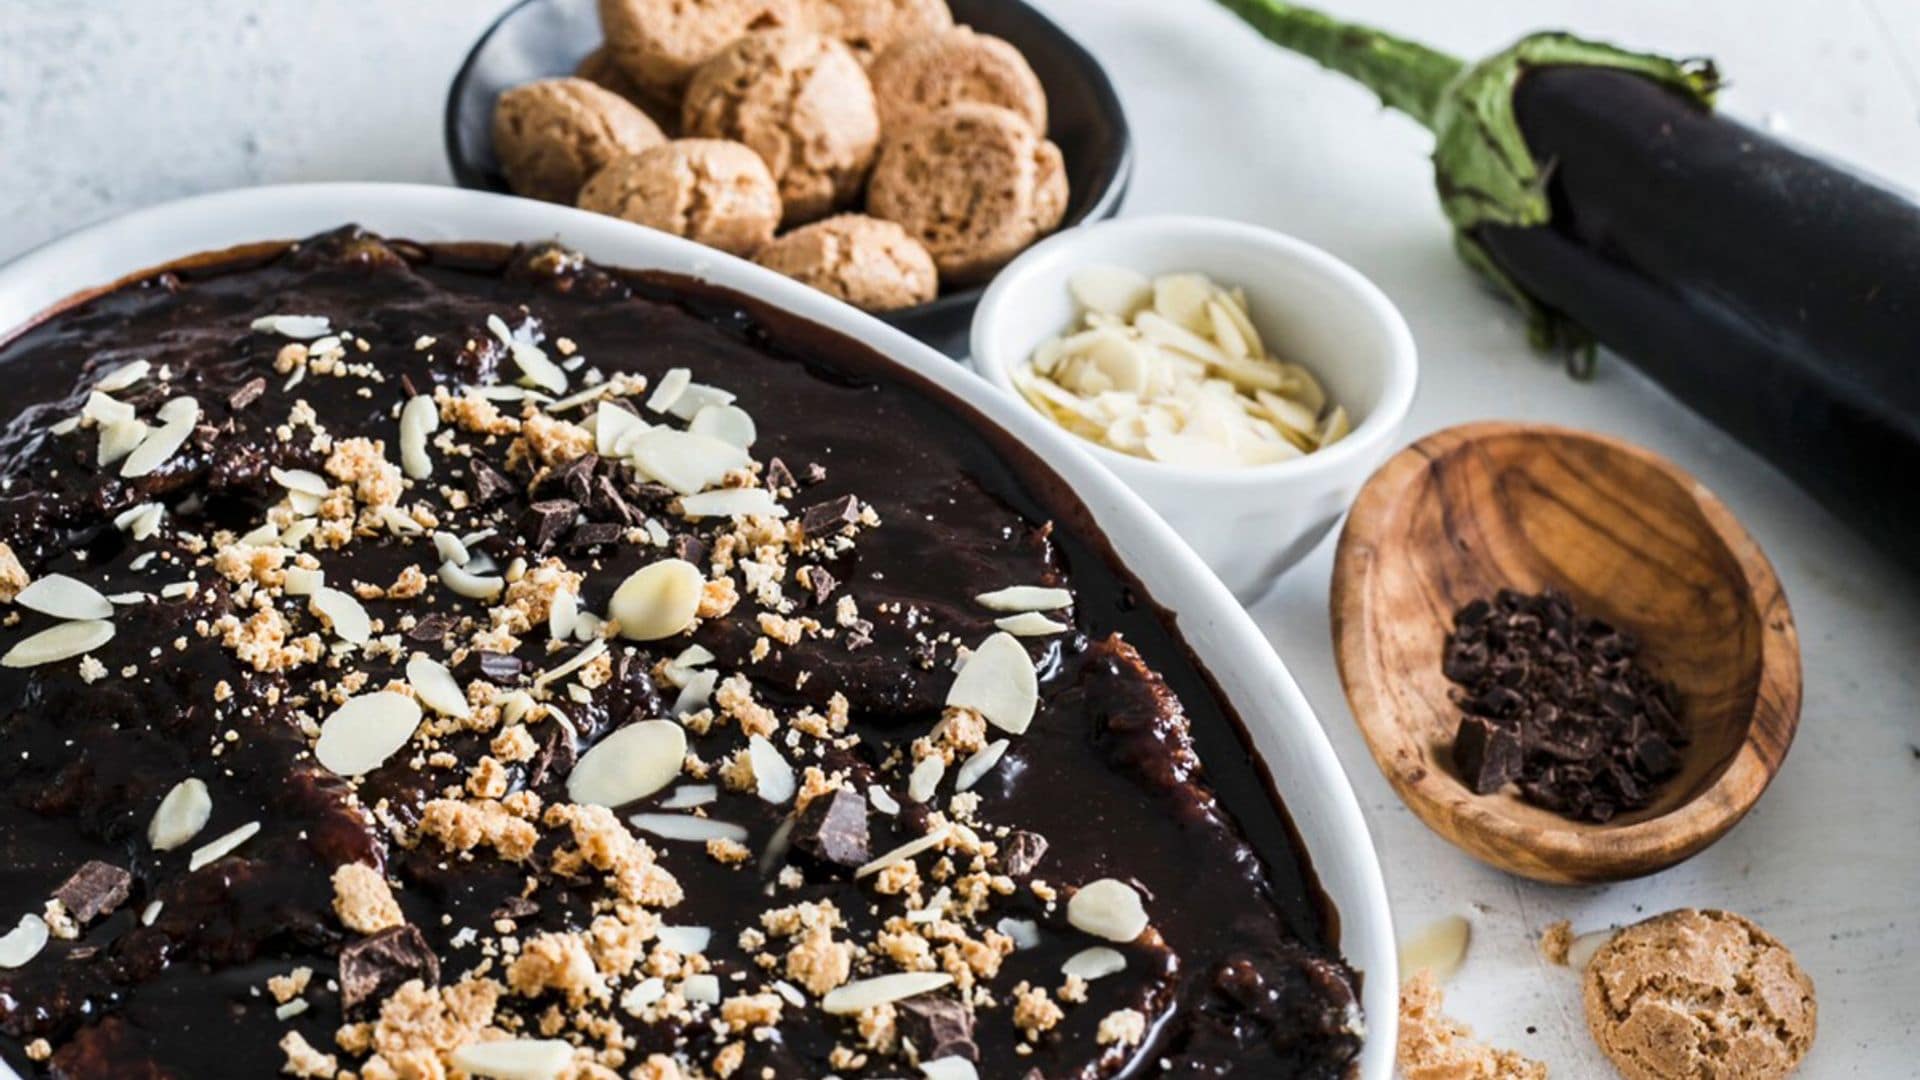 ¿Berenjenas con chocolate? Descubre cómo combinar ingredientes con éxito en tus recetas